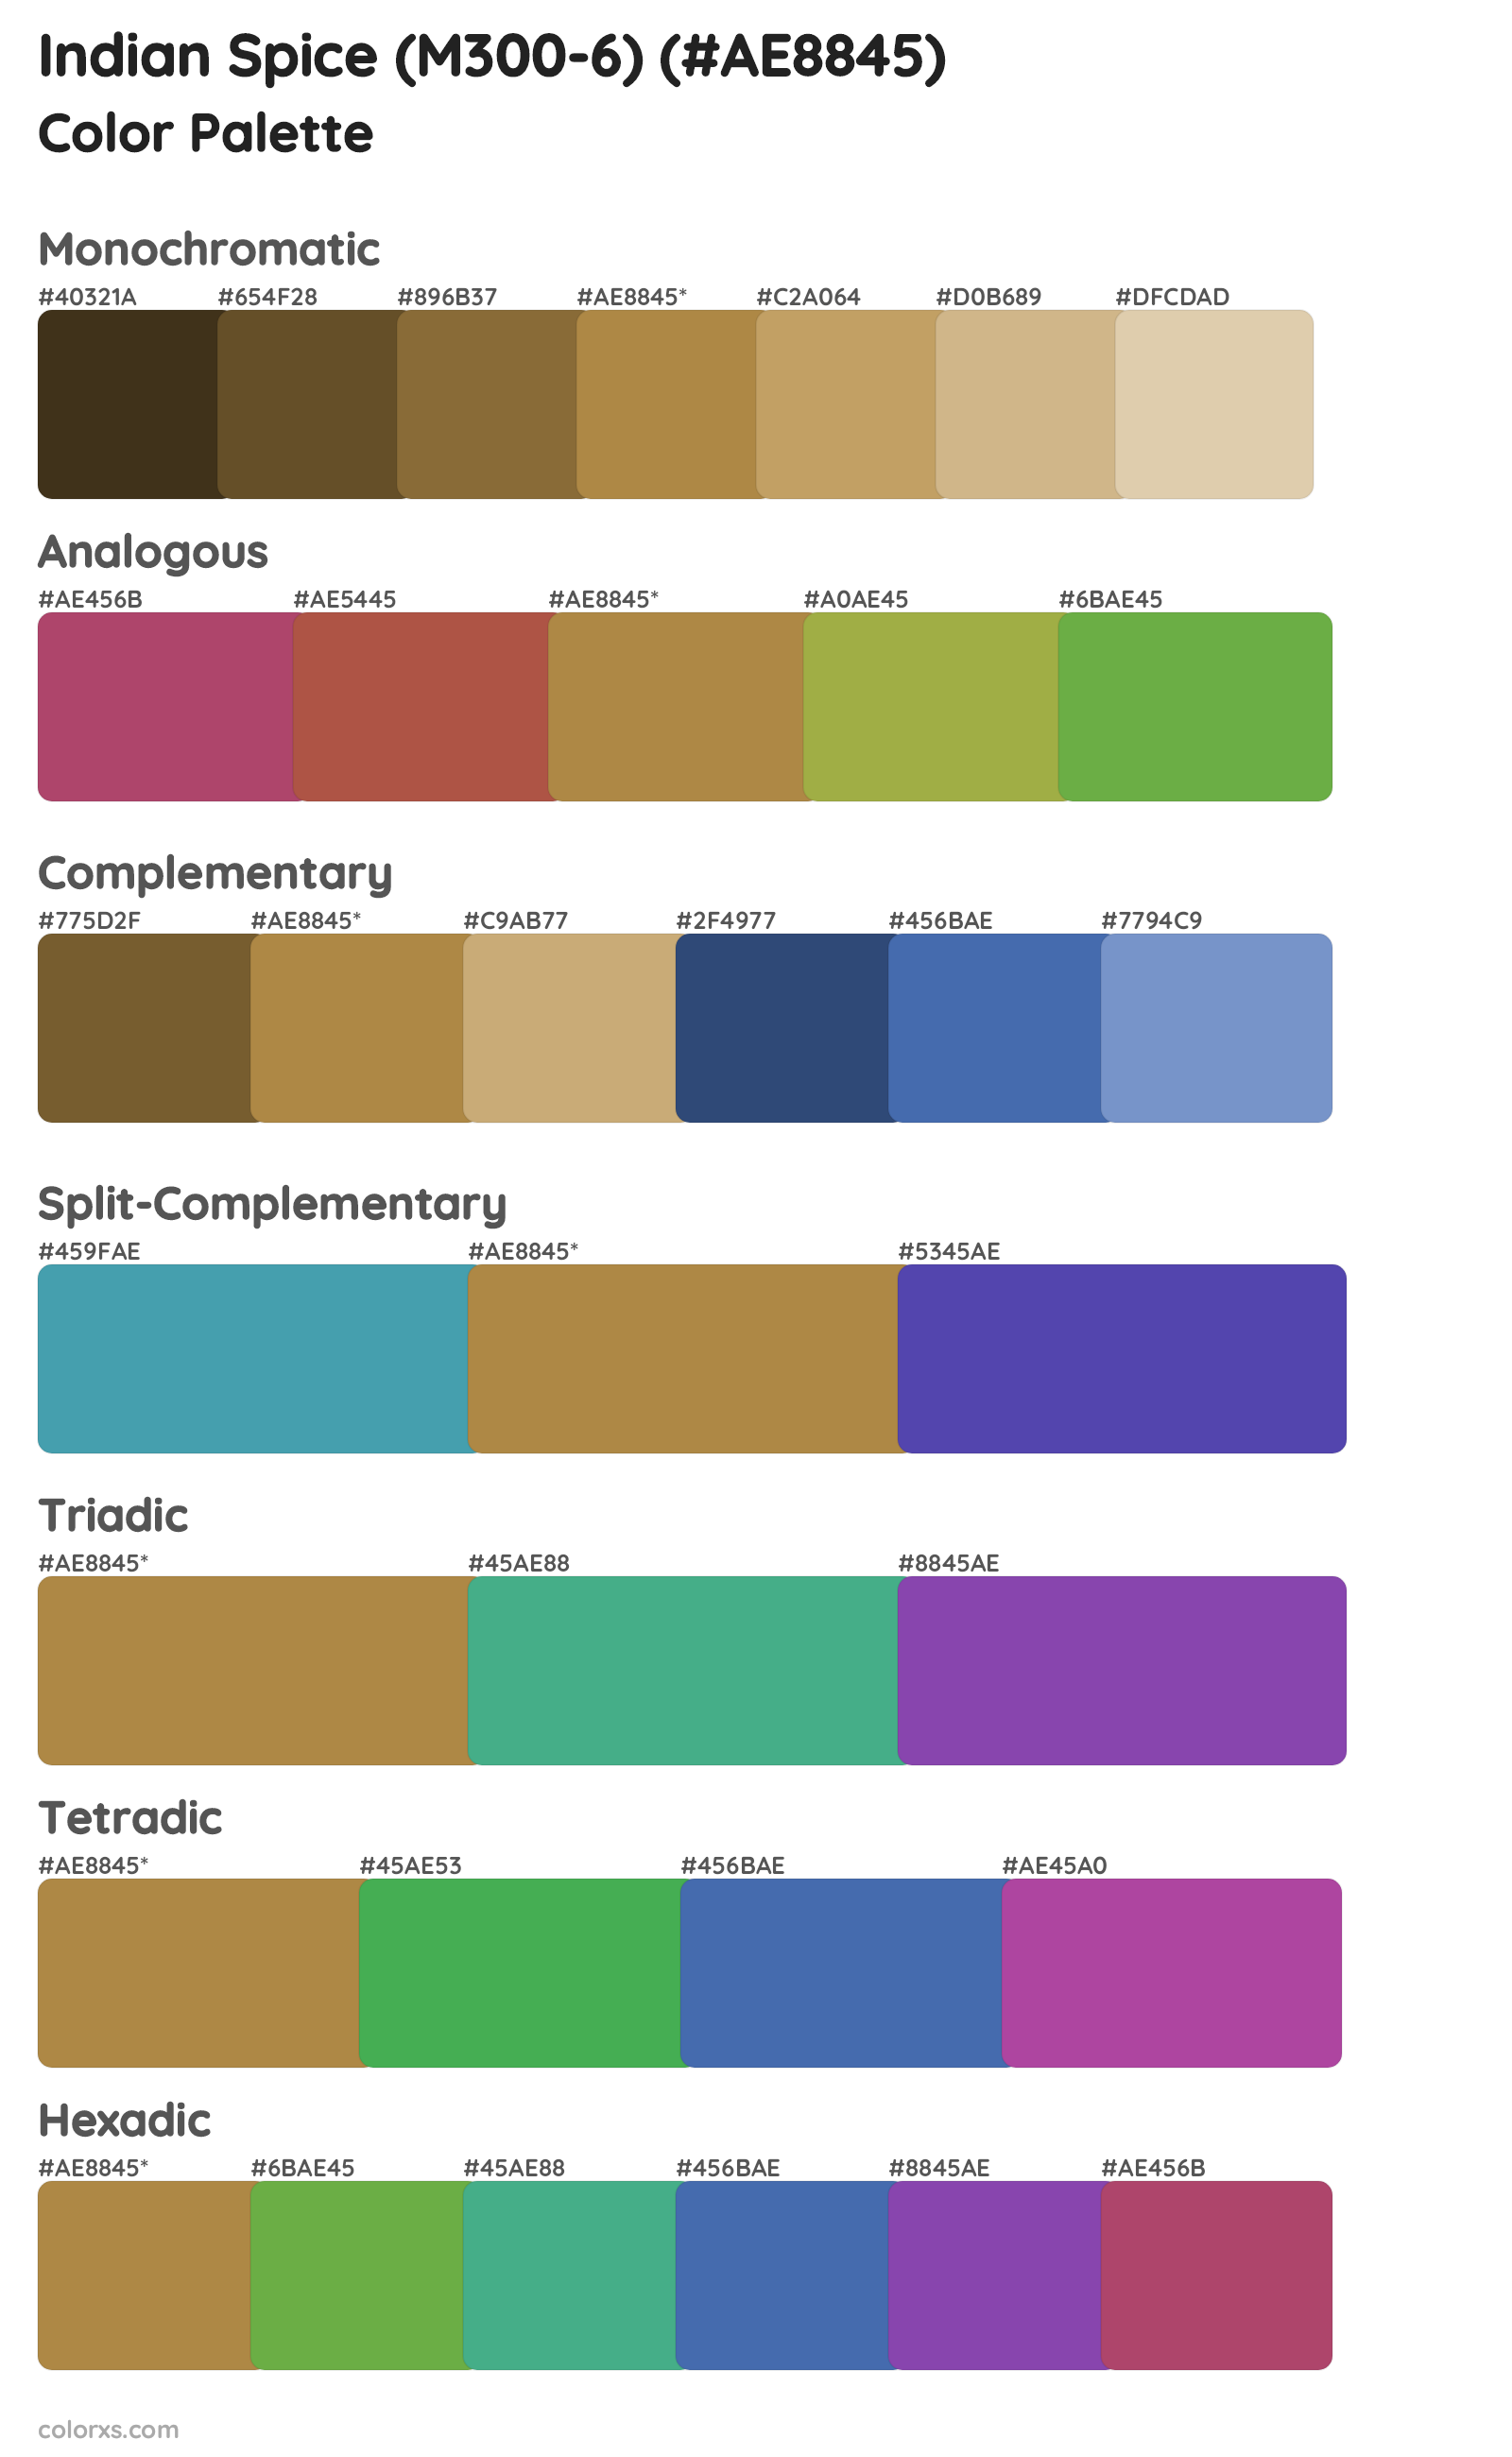 Indian Spice (M300-6) Color Scheme Palettes